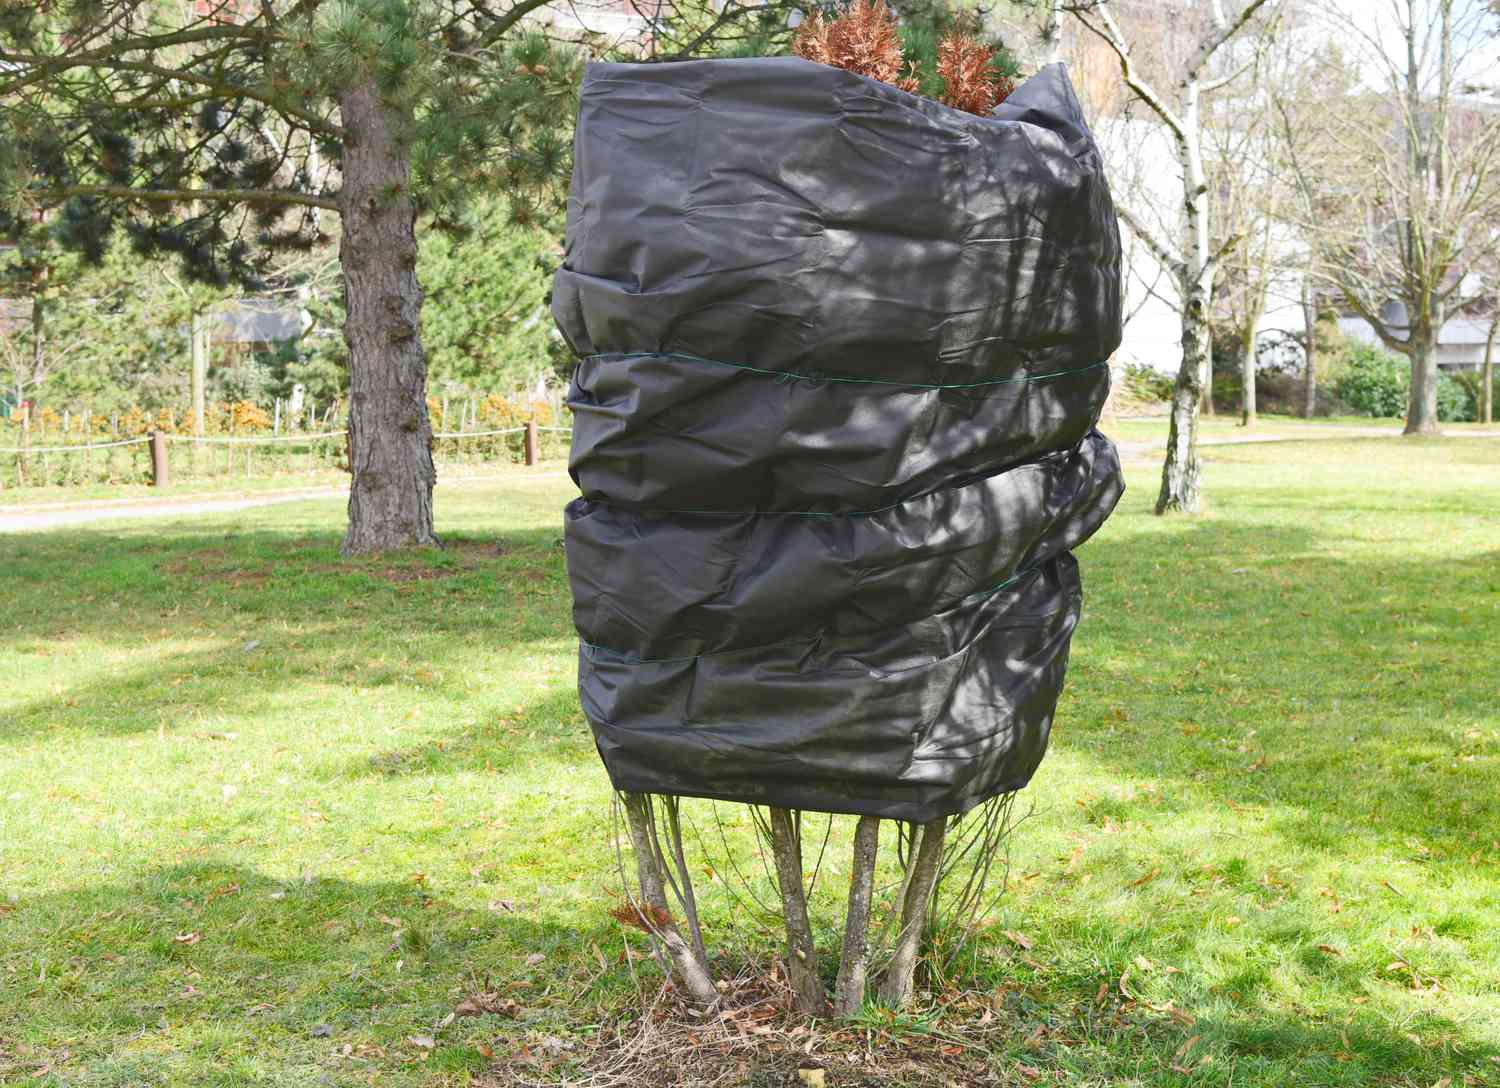 Arborvitae-Baum in Schwarz eingewickelt und festgebunden, damit die Blätter nicht braun werden